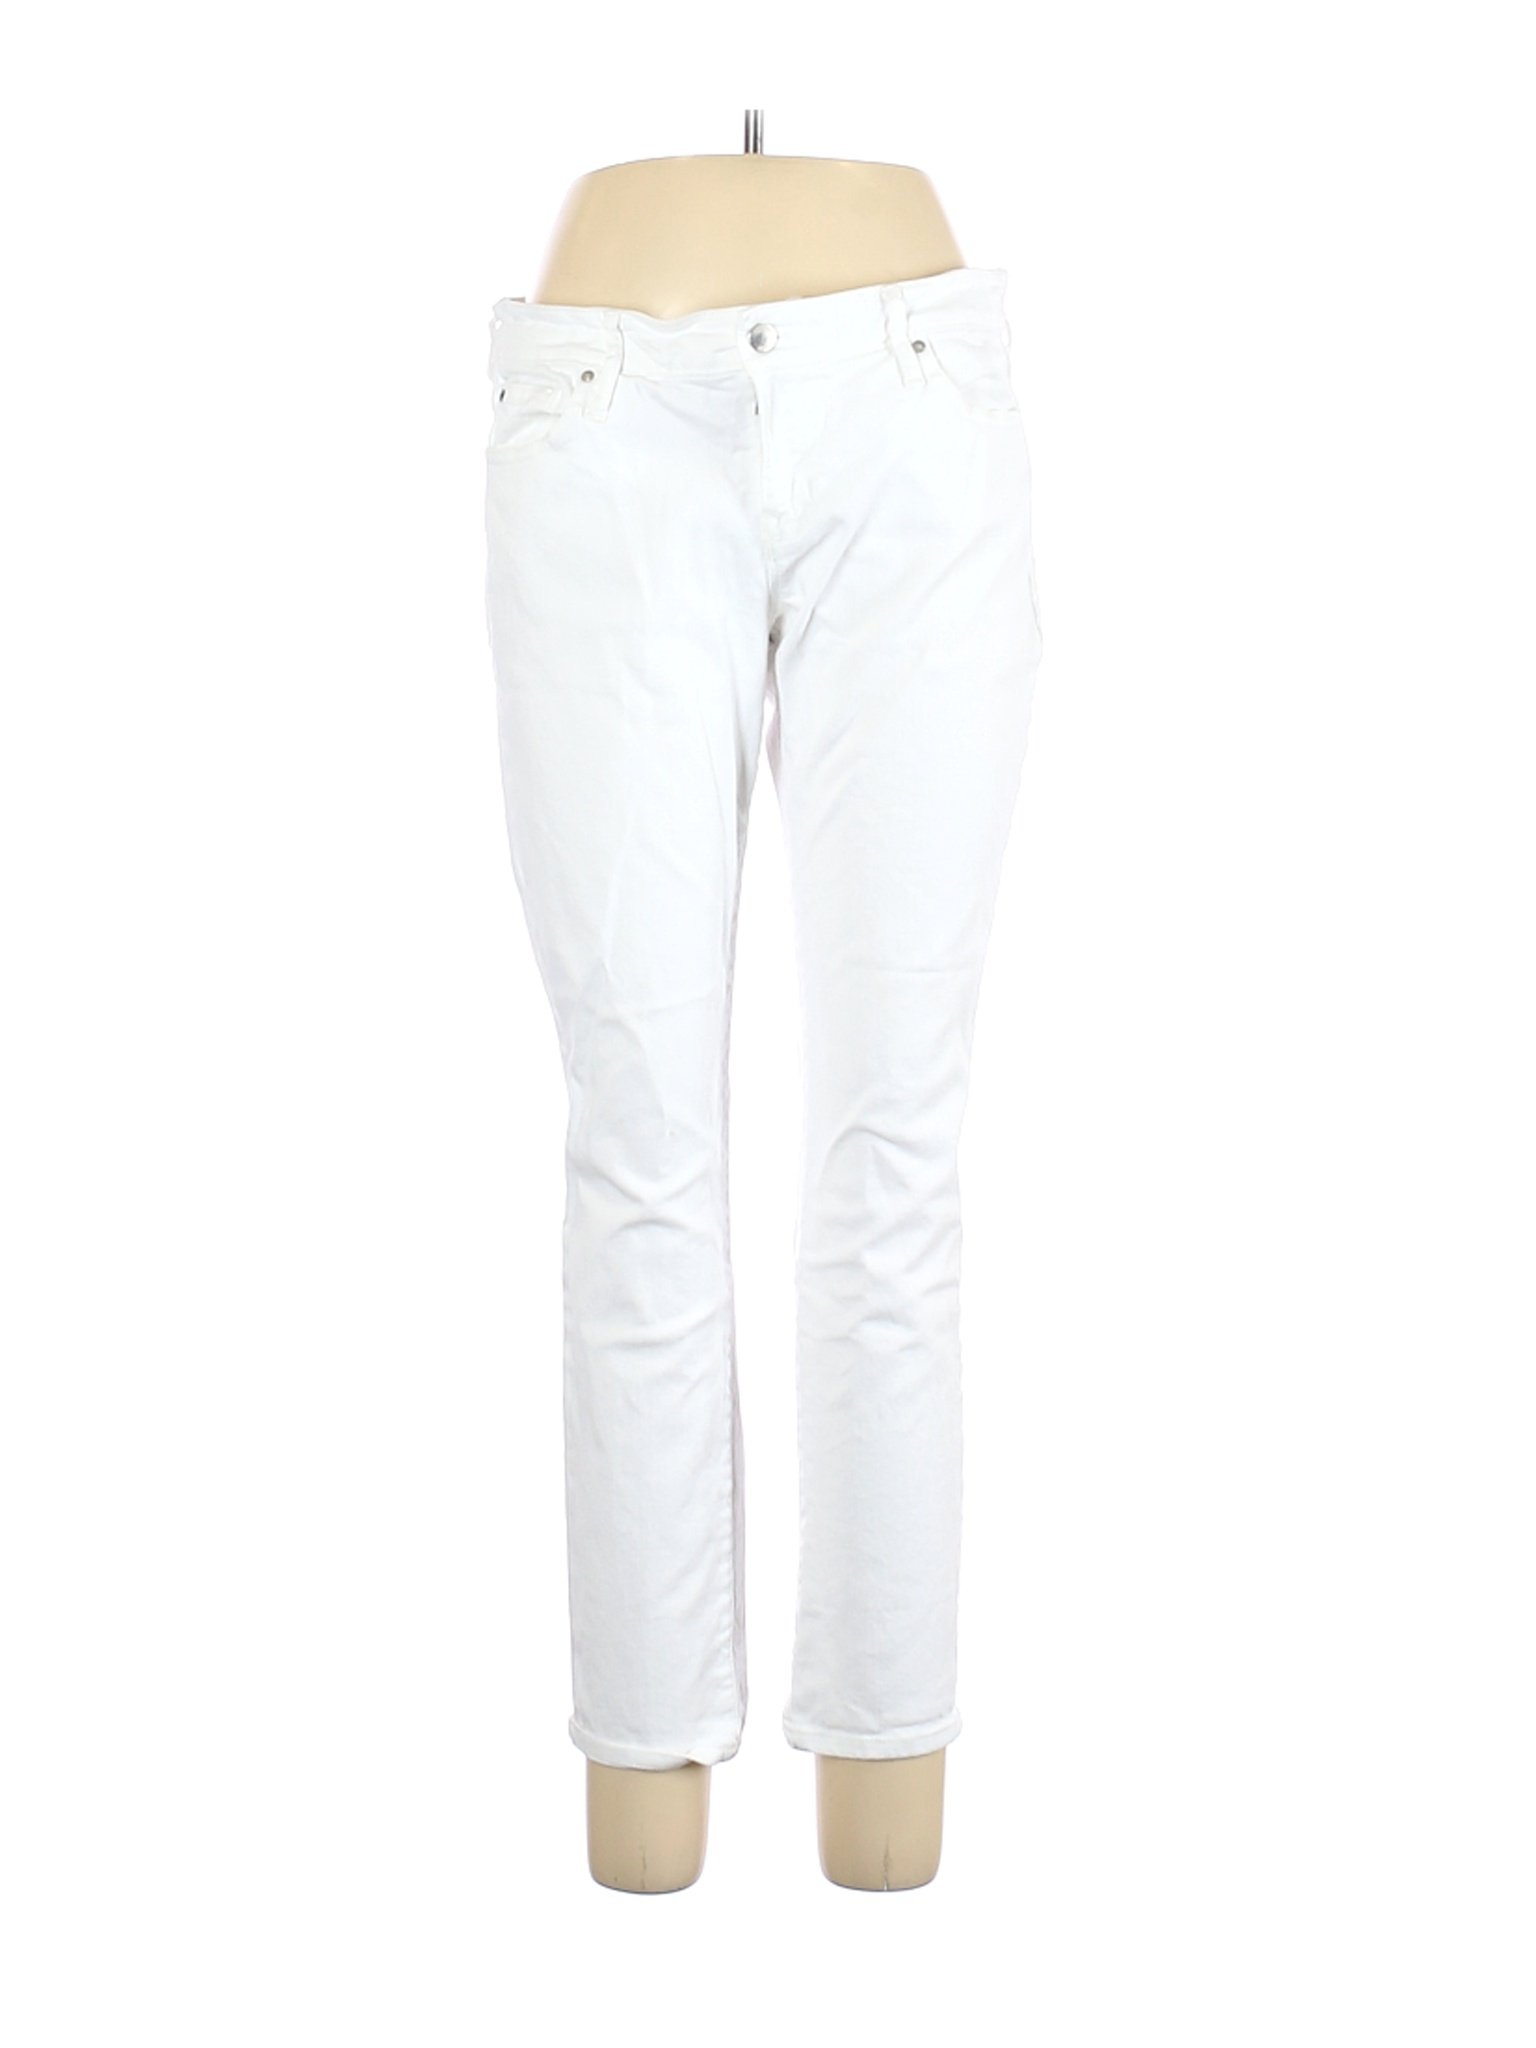 Gap Women White Jeans 32W | eBay